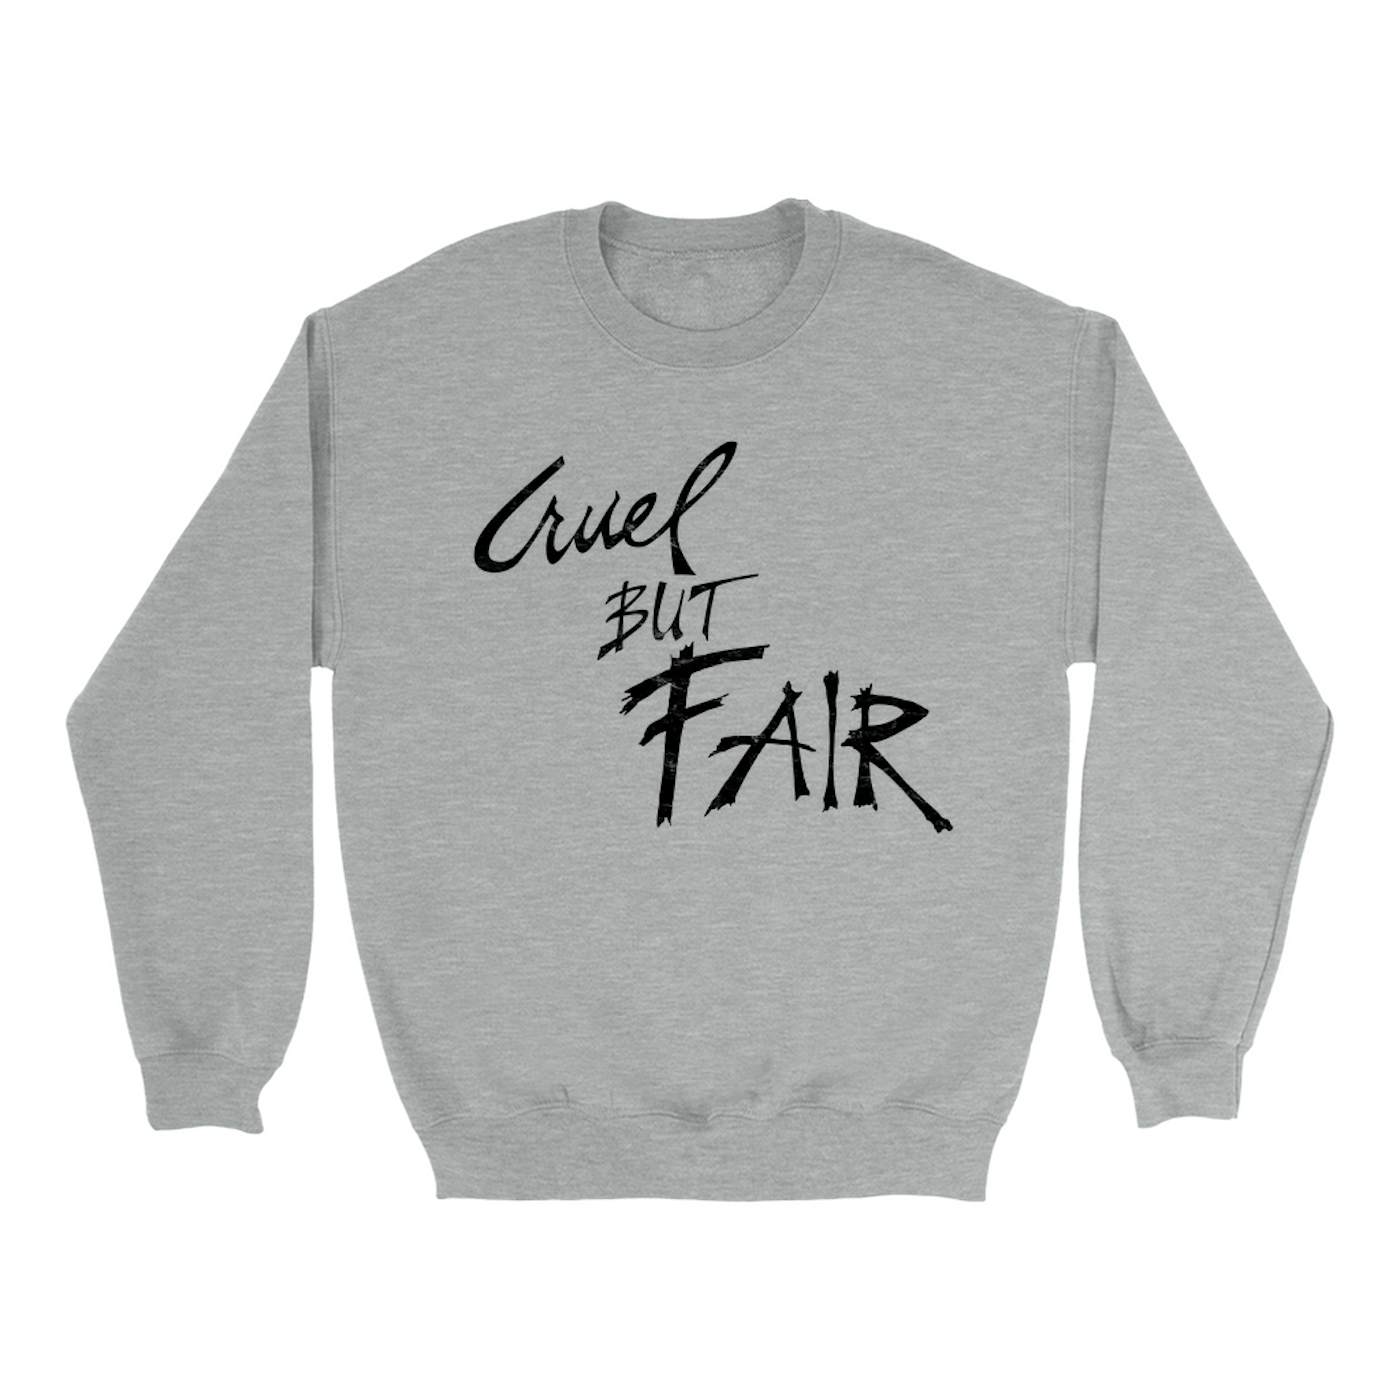 Rod Stewart Sweatshirt | Cruel But Fair Worn By Rod Stewart Sweatshirt